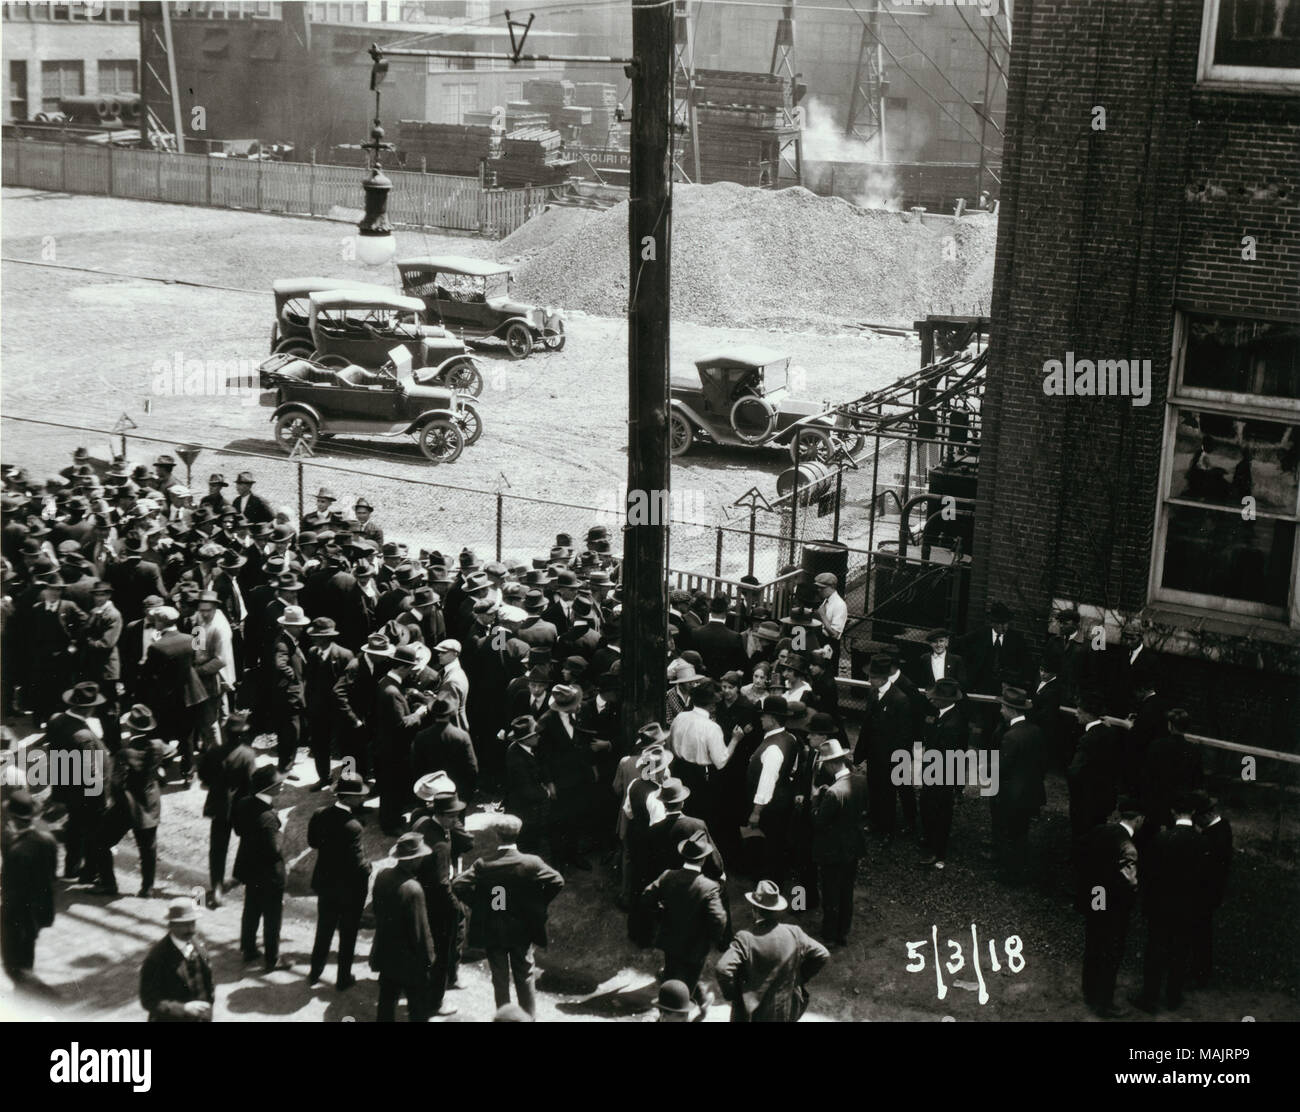 Titolo: Wagner Electric Company sciopero, numerose persone si sono radunate fuori dall'edificio, alcuni in conflittuale pone come essi converse gli uni con gli altri. Il 3 maggio 1918. . 1918. Foto Stock